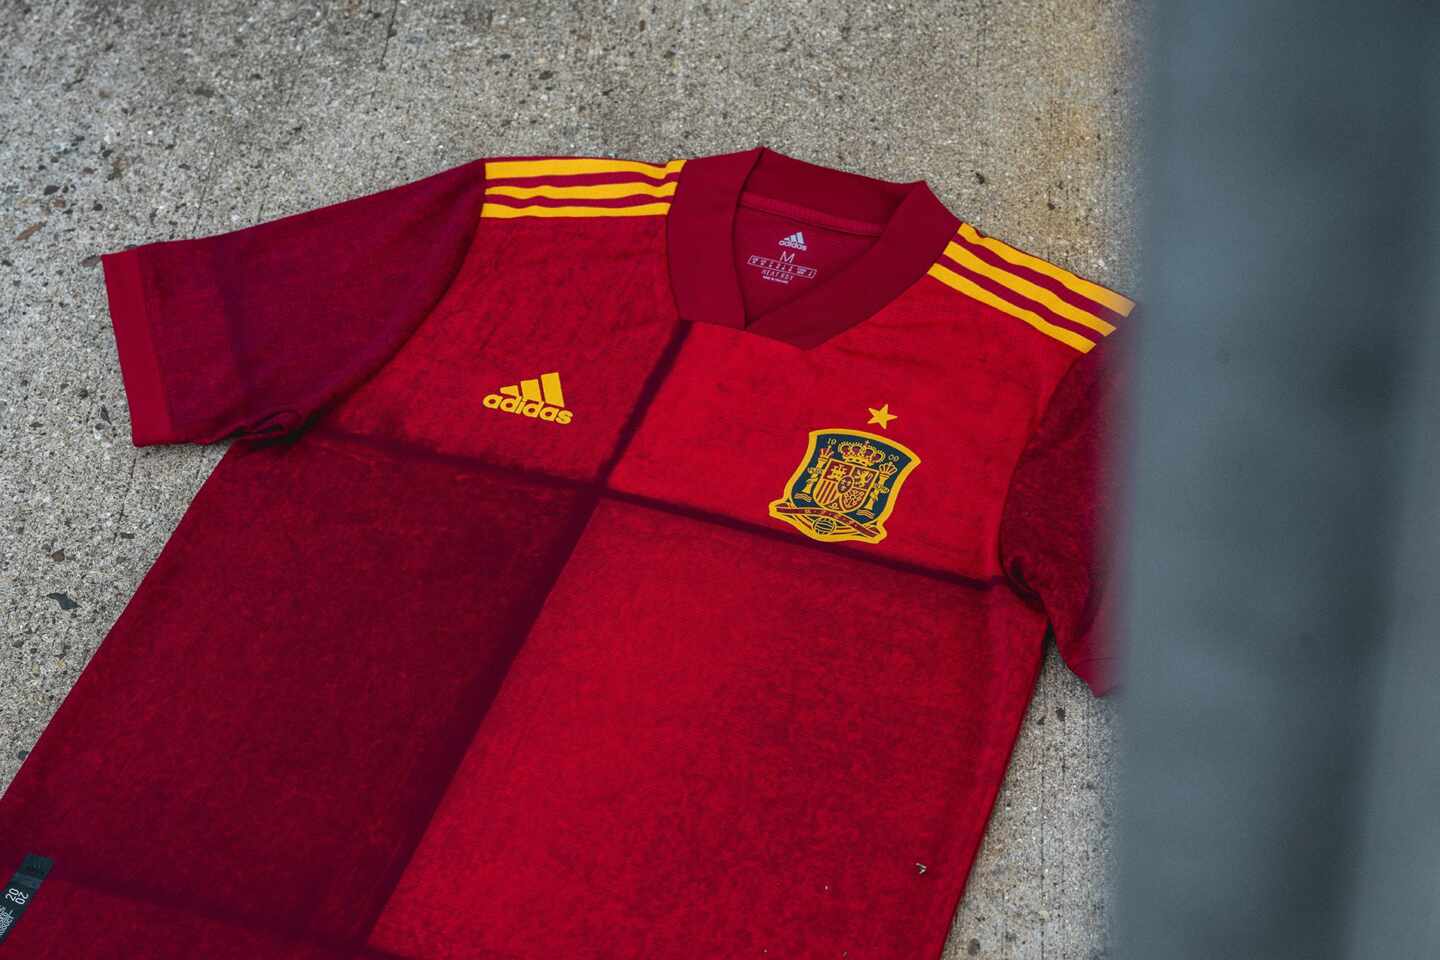 La polémica camiseta de la Selección Española que "diferencia" y "une" a la vez